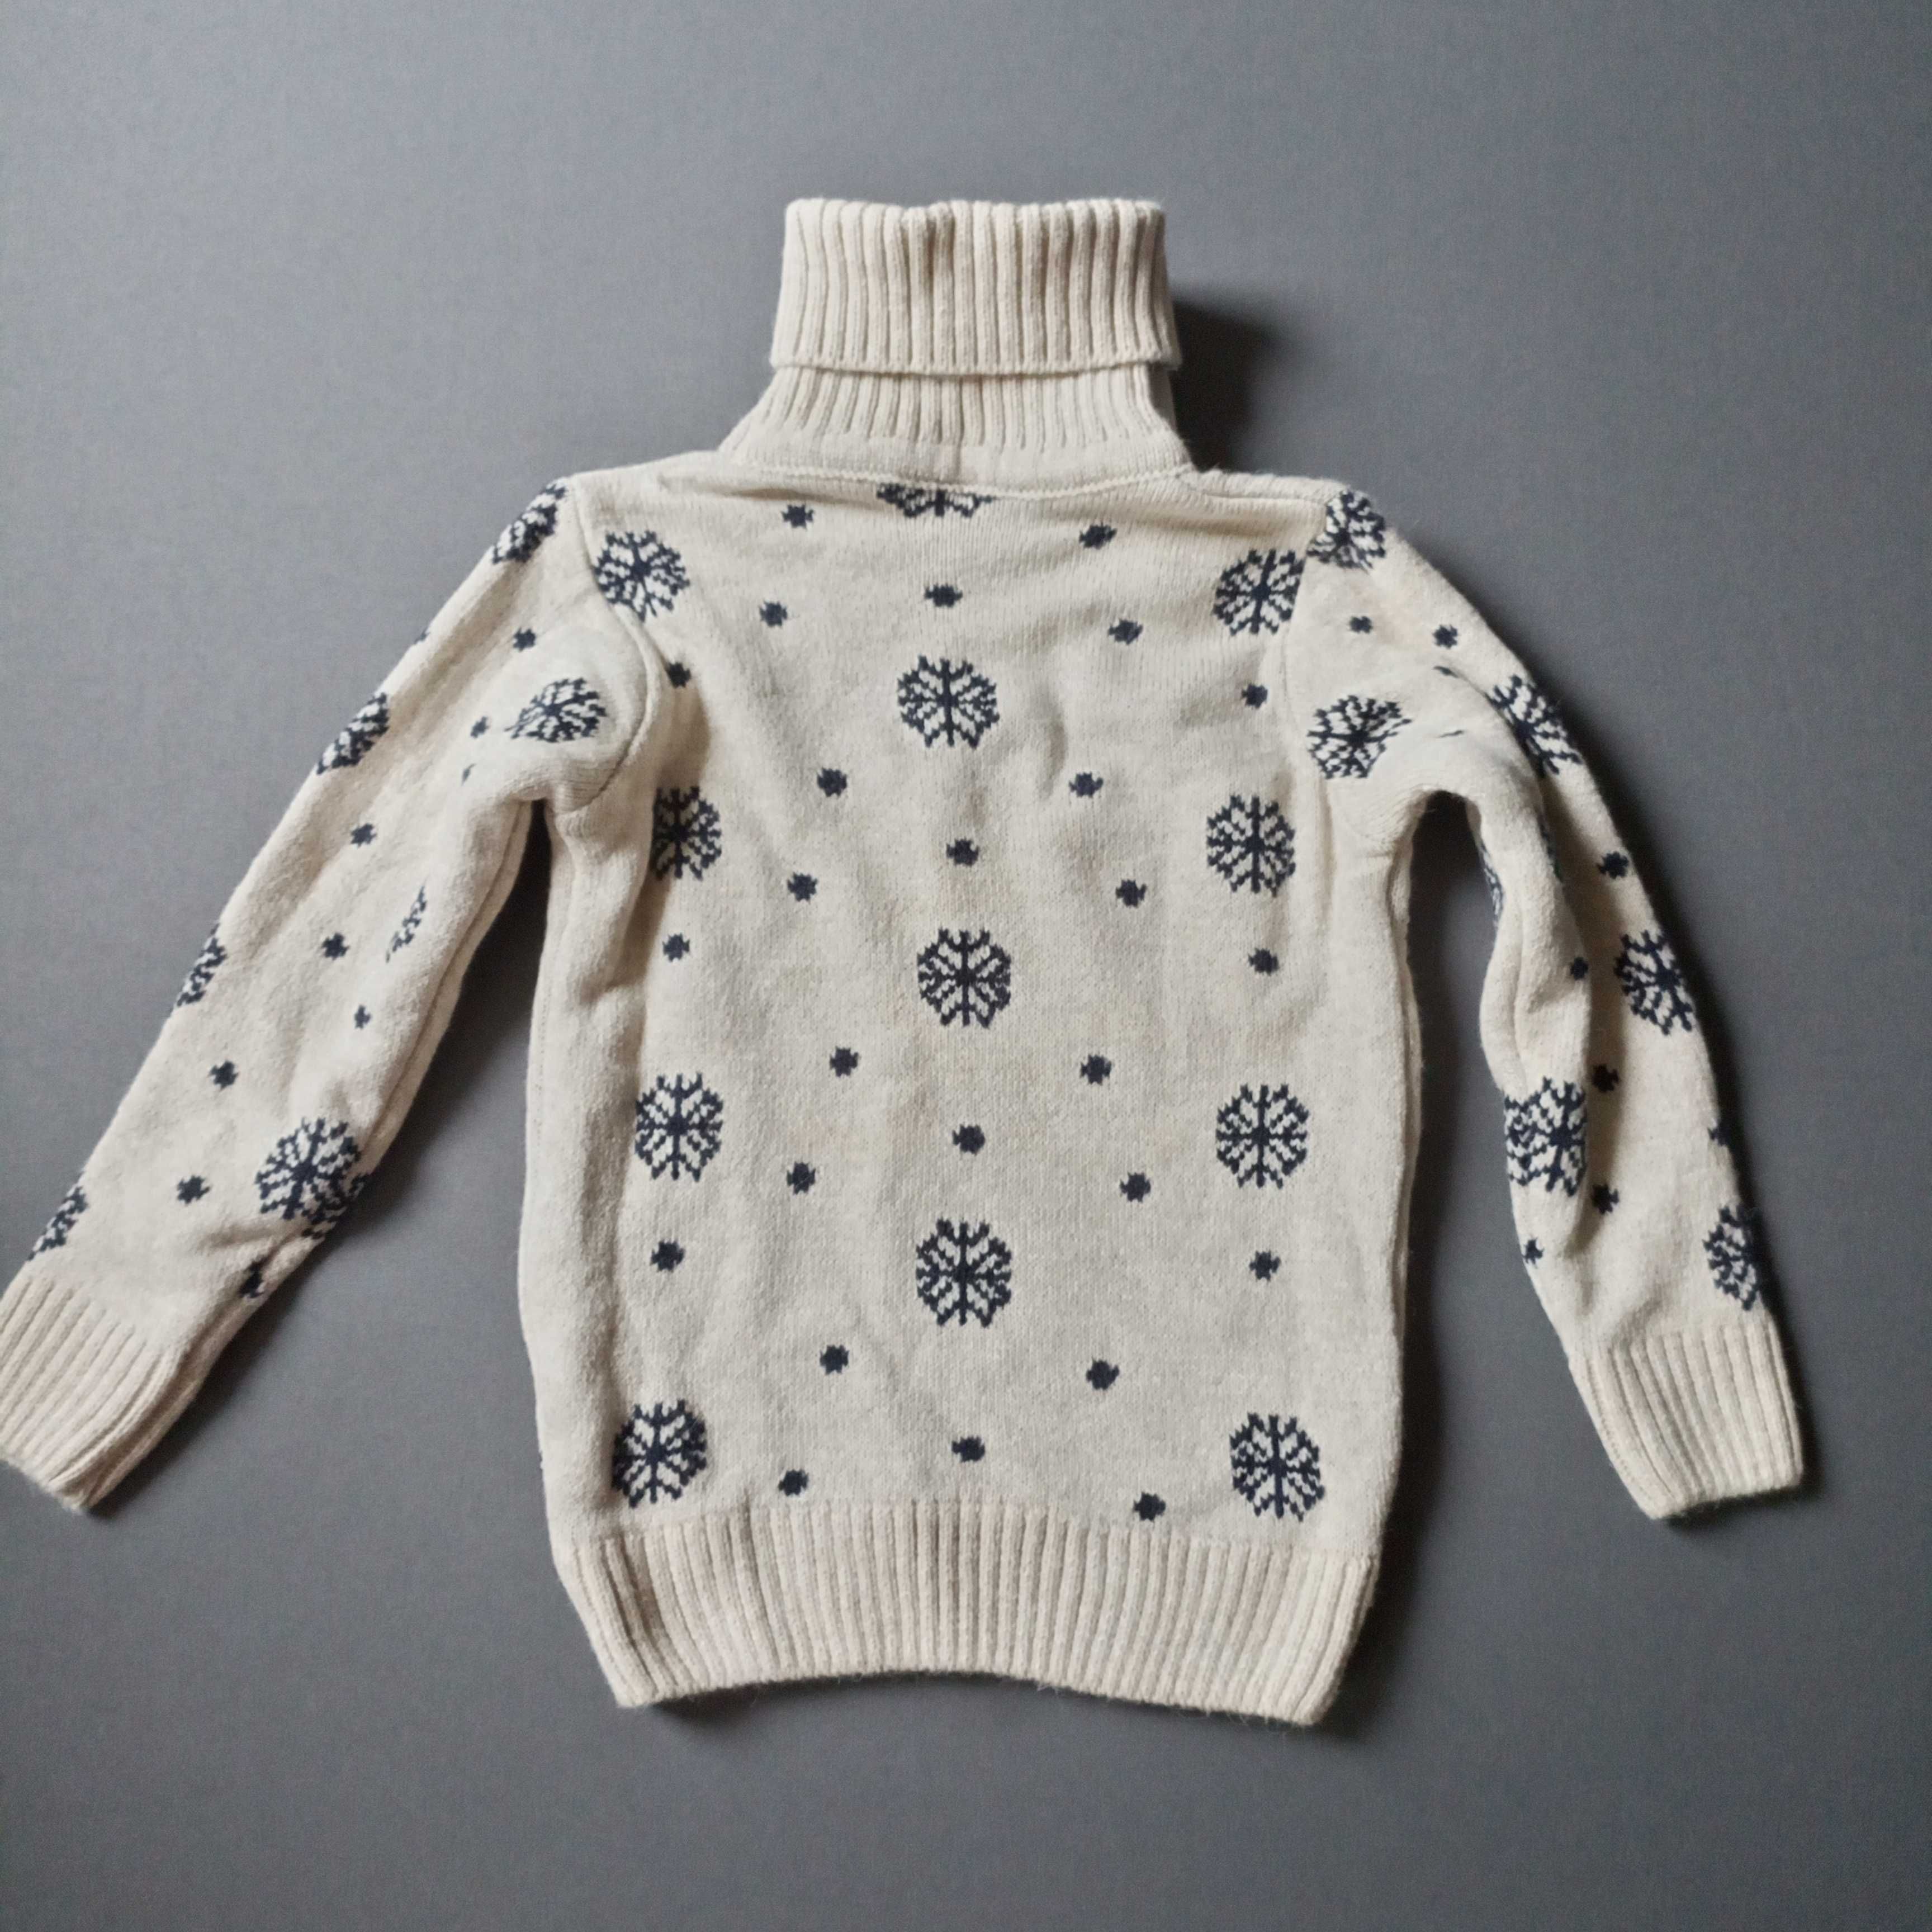 Теплый новогодний свитер для девочки или мальчика на 4-5 лет